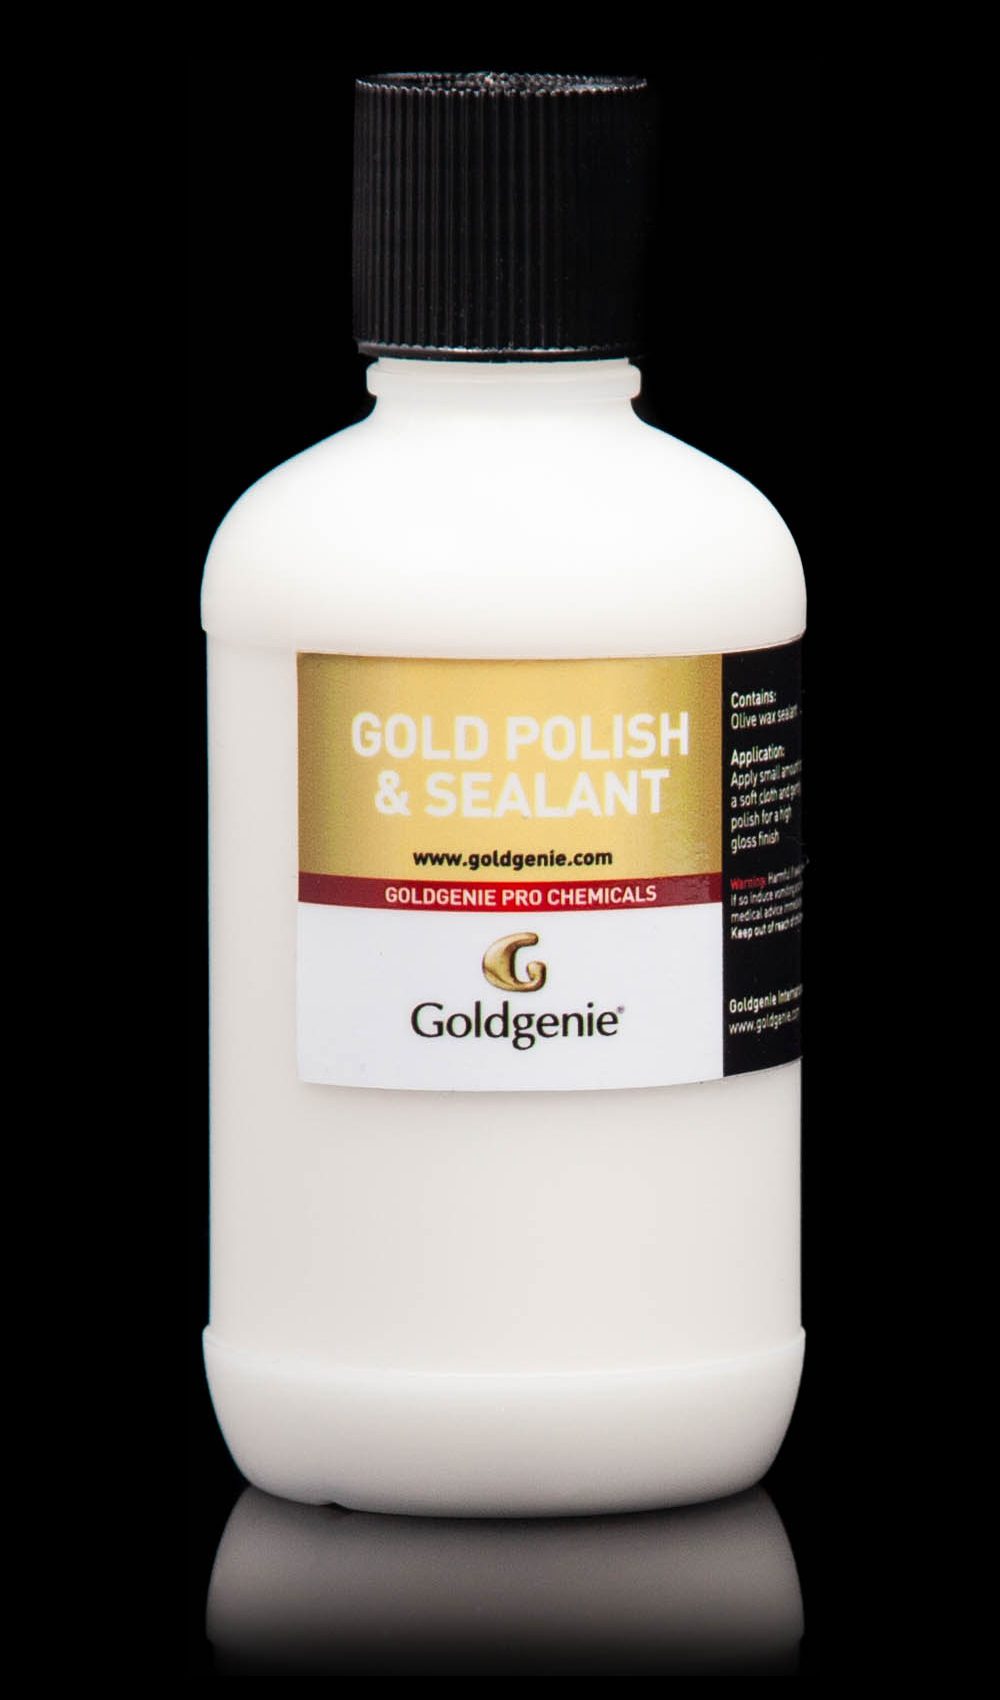 Gold Polish and Sealant